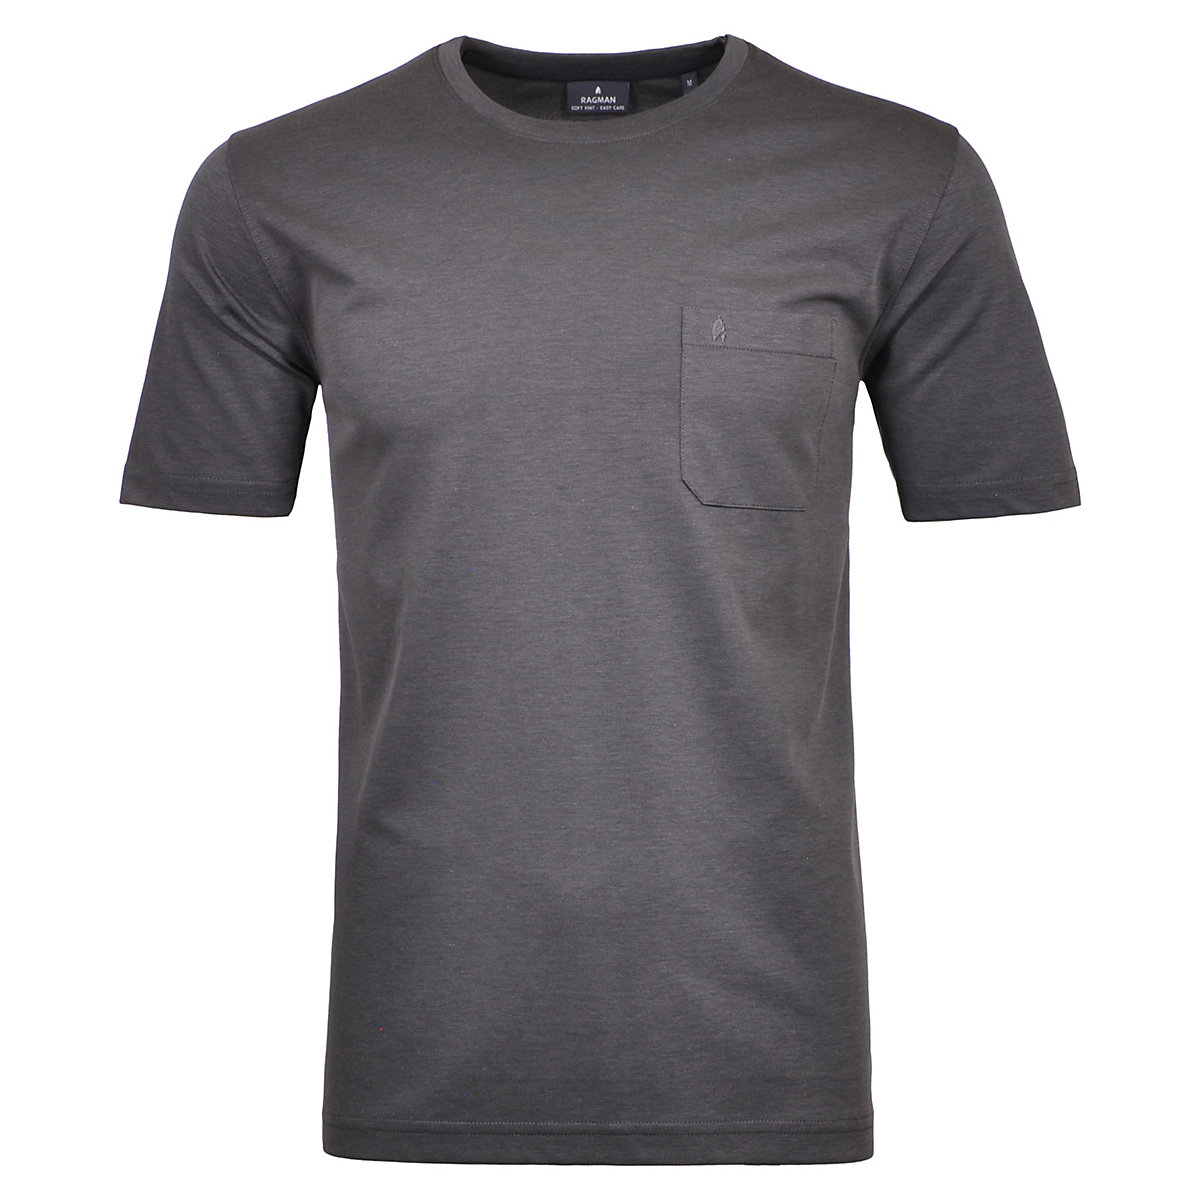 RAGMAN Softknit T-Shirt Rundhals mit Brusttasche T-Shirts grau